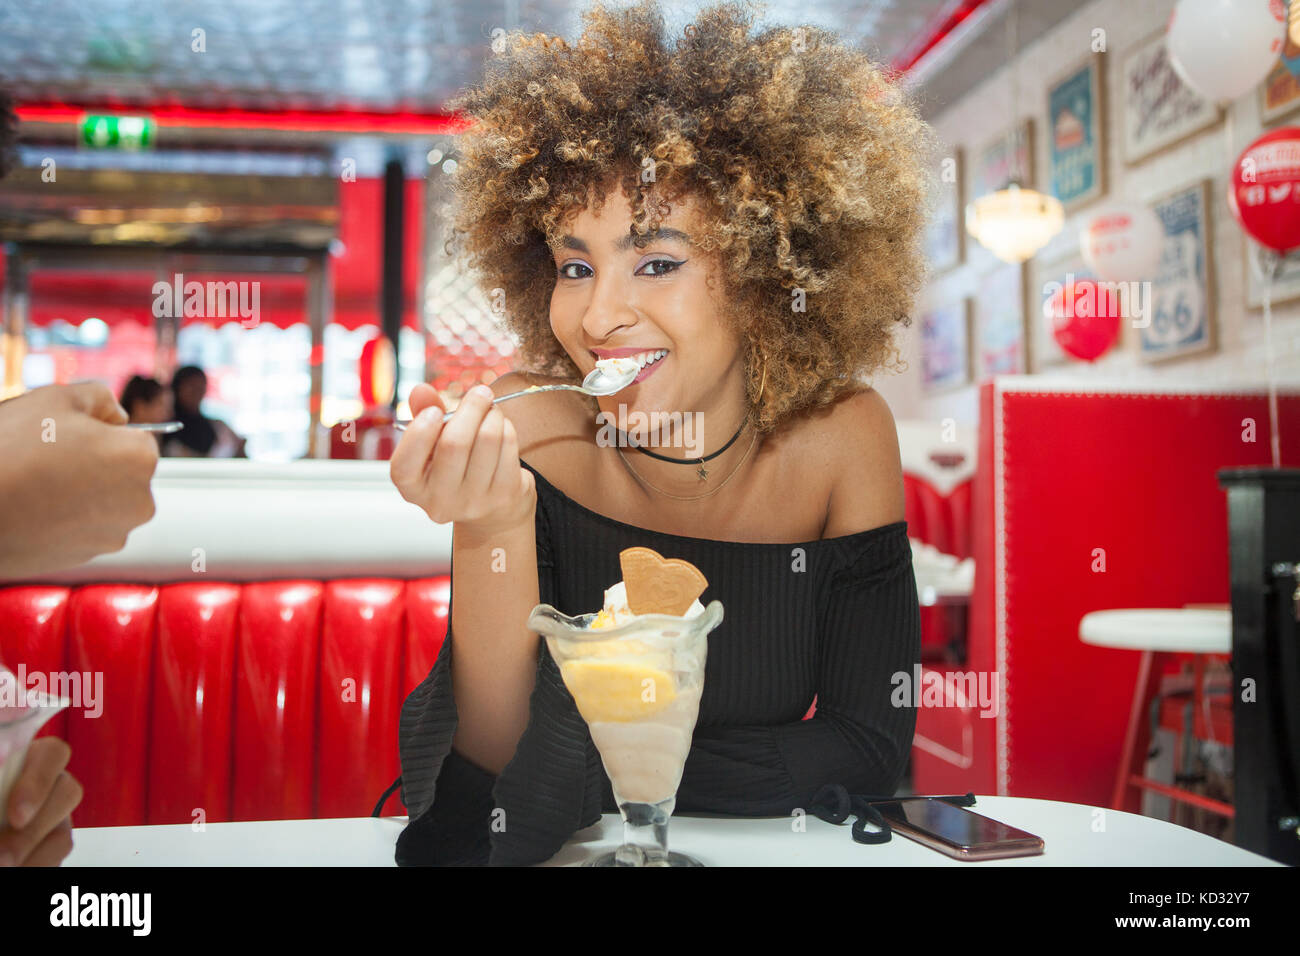 Portrait de jeune femme assise dans la salle à manger, manger des glaces dessert, smiling Banque D'Images